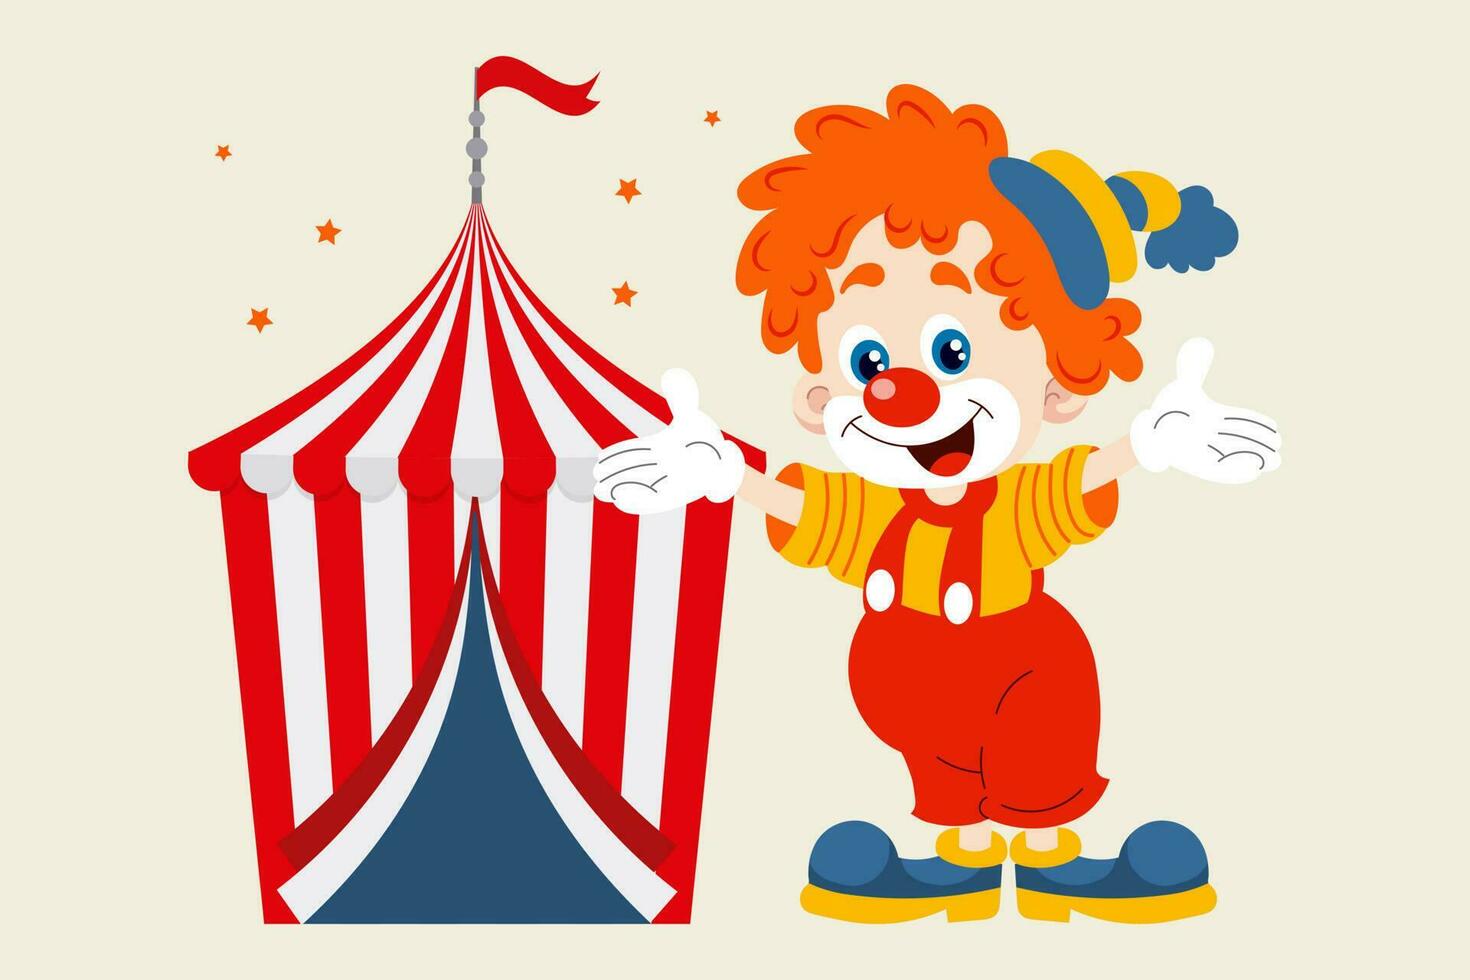 alegre payaso invita a el circo. linda payaso y circo grande cima. vistoso dibujos animados ilustración, vector